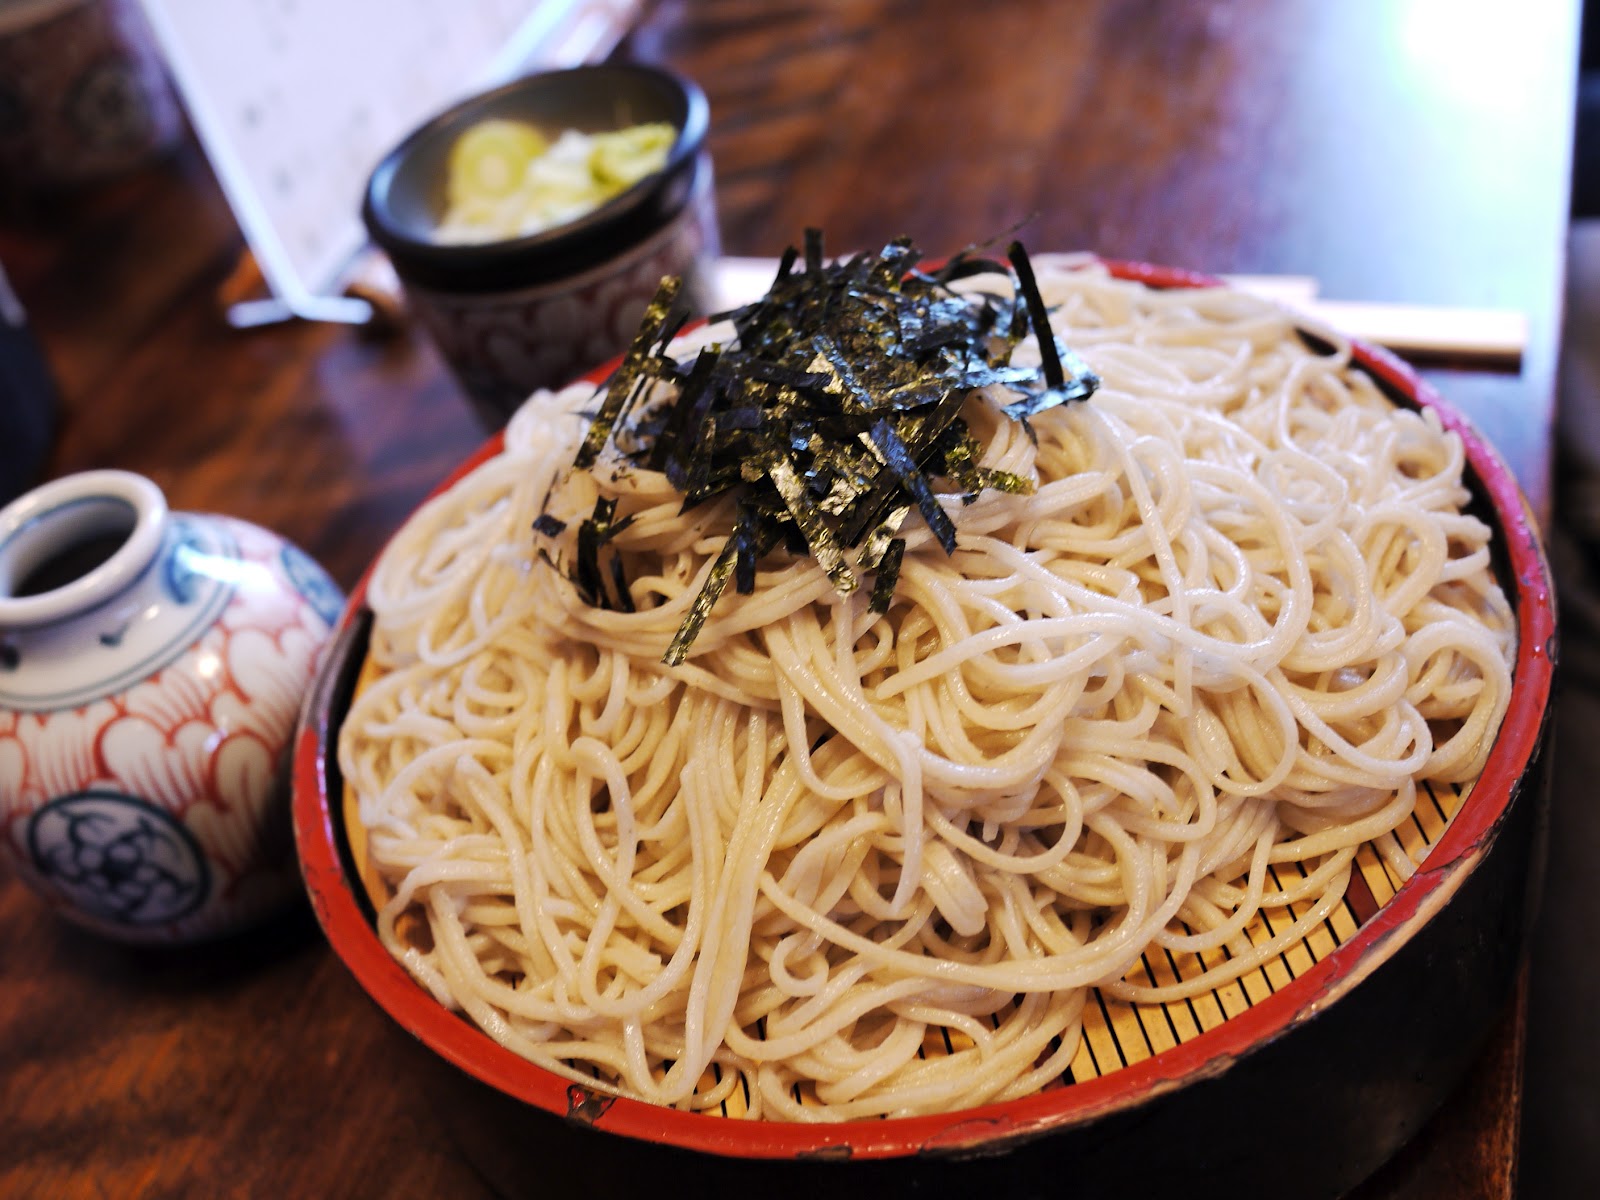 新年習俗大不同!原來日本人都吃這些美食~ | 文章內置圖片